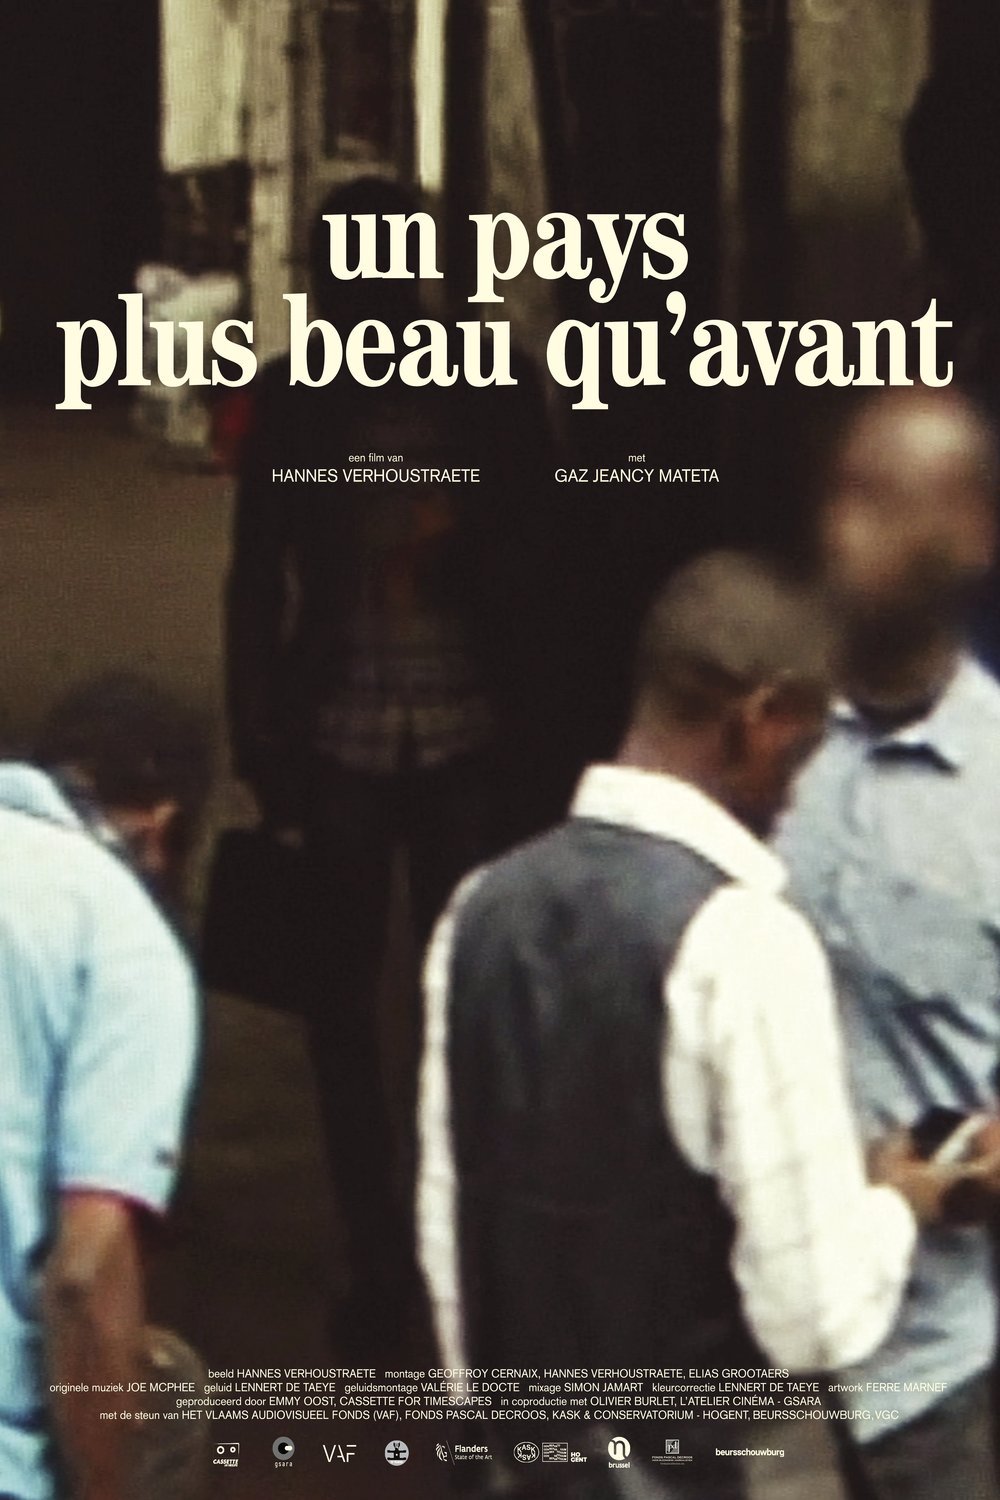 Lingala poster of the movie Un pays plus beau qu'avant